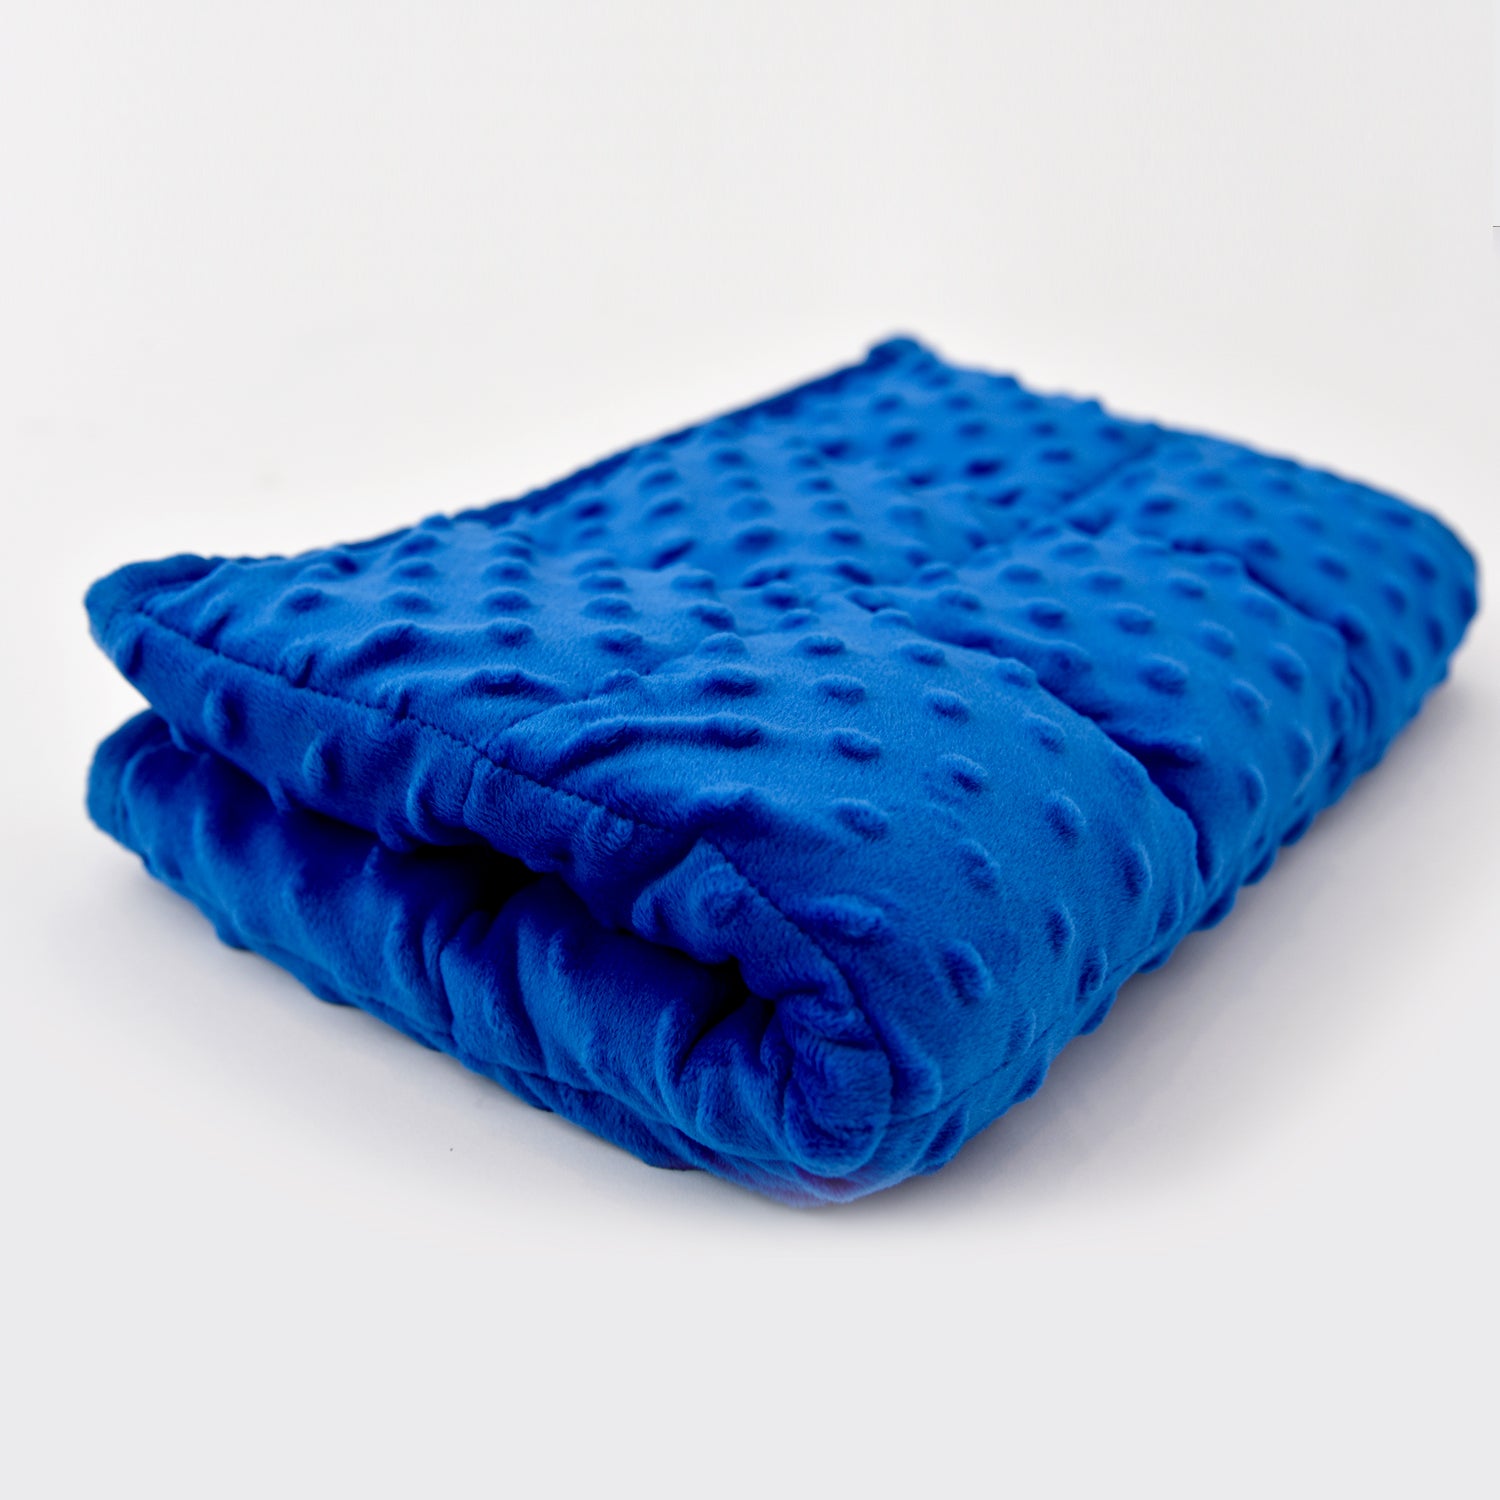 Weighted Lap Blanket Kuddle Sleep